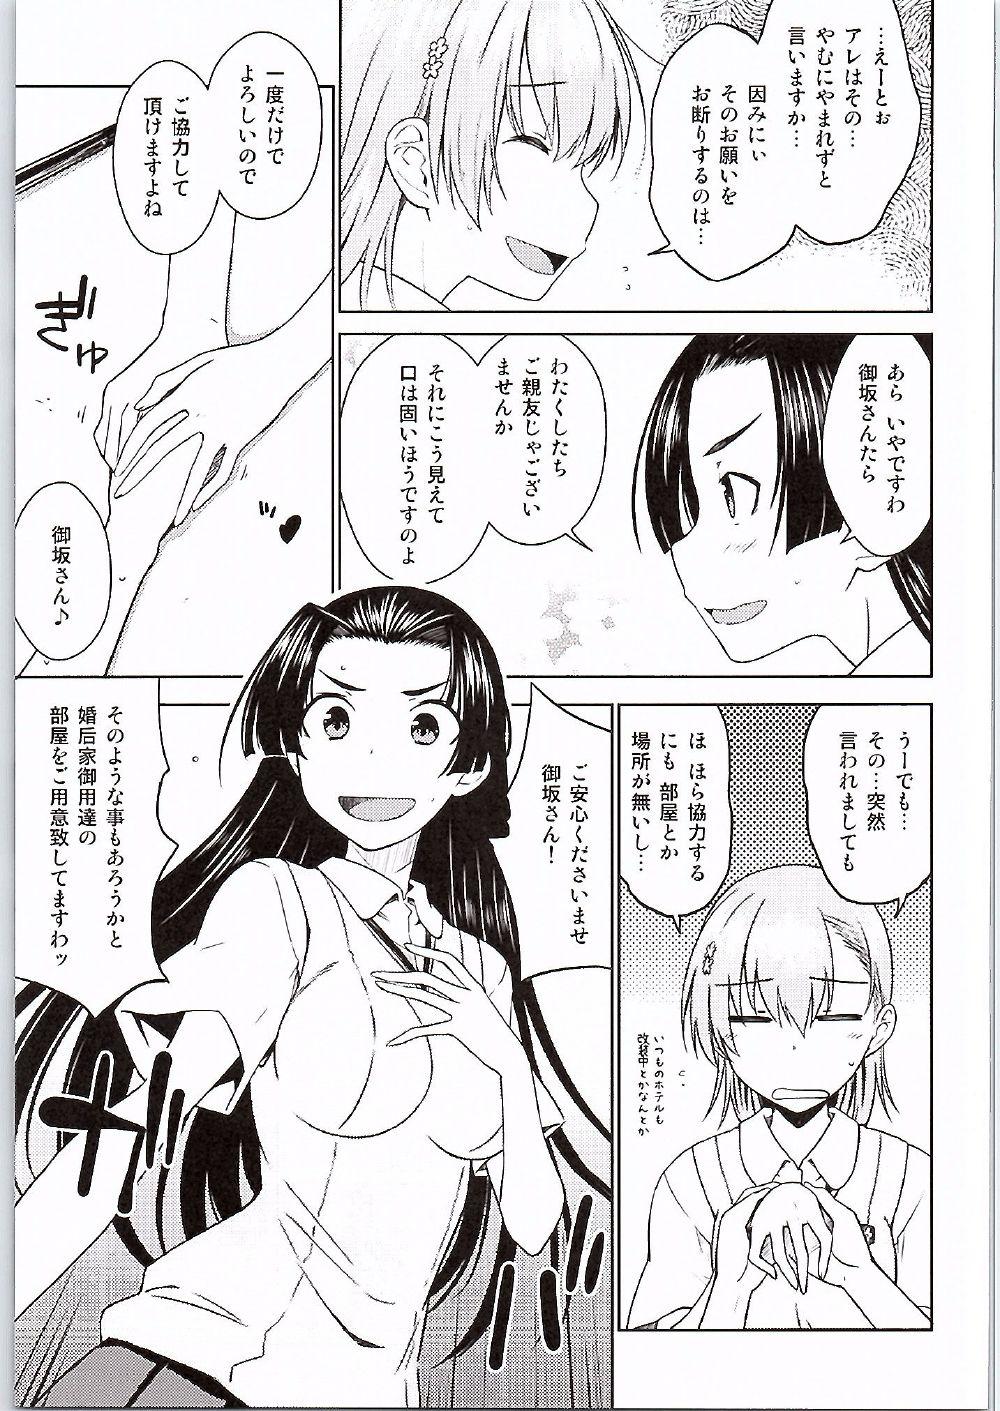 Transsexual BEAUTIFUL SHINE - Toaru kagaku no railgun Delicia - Page 6